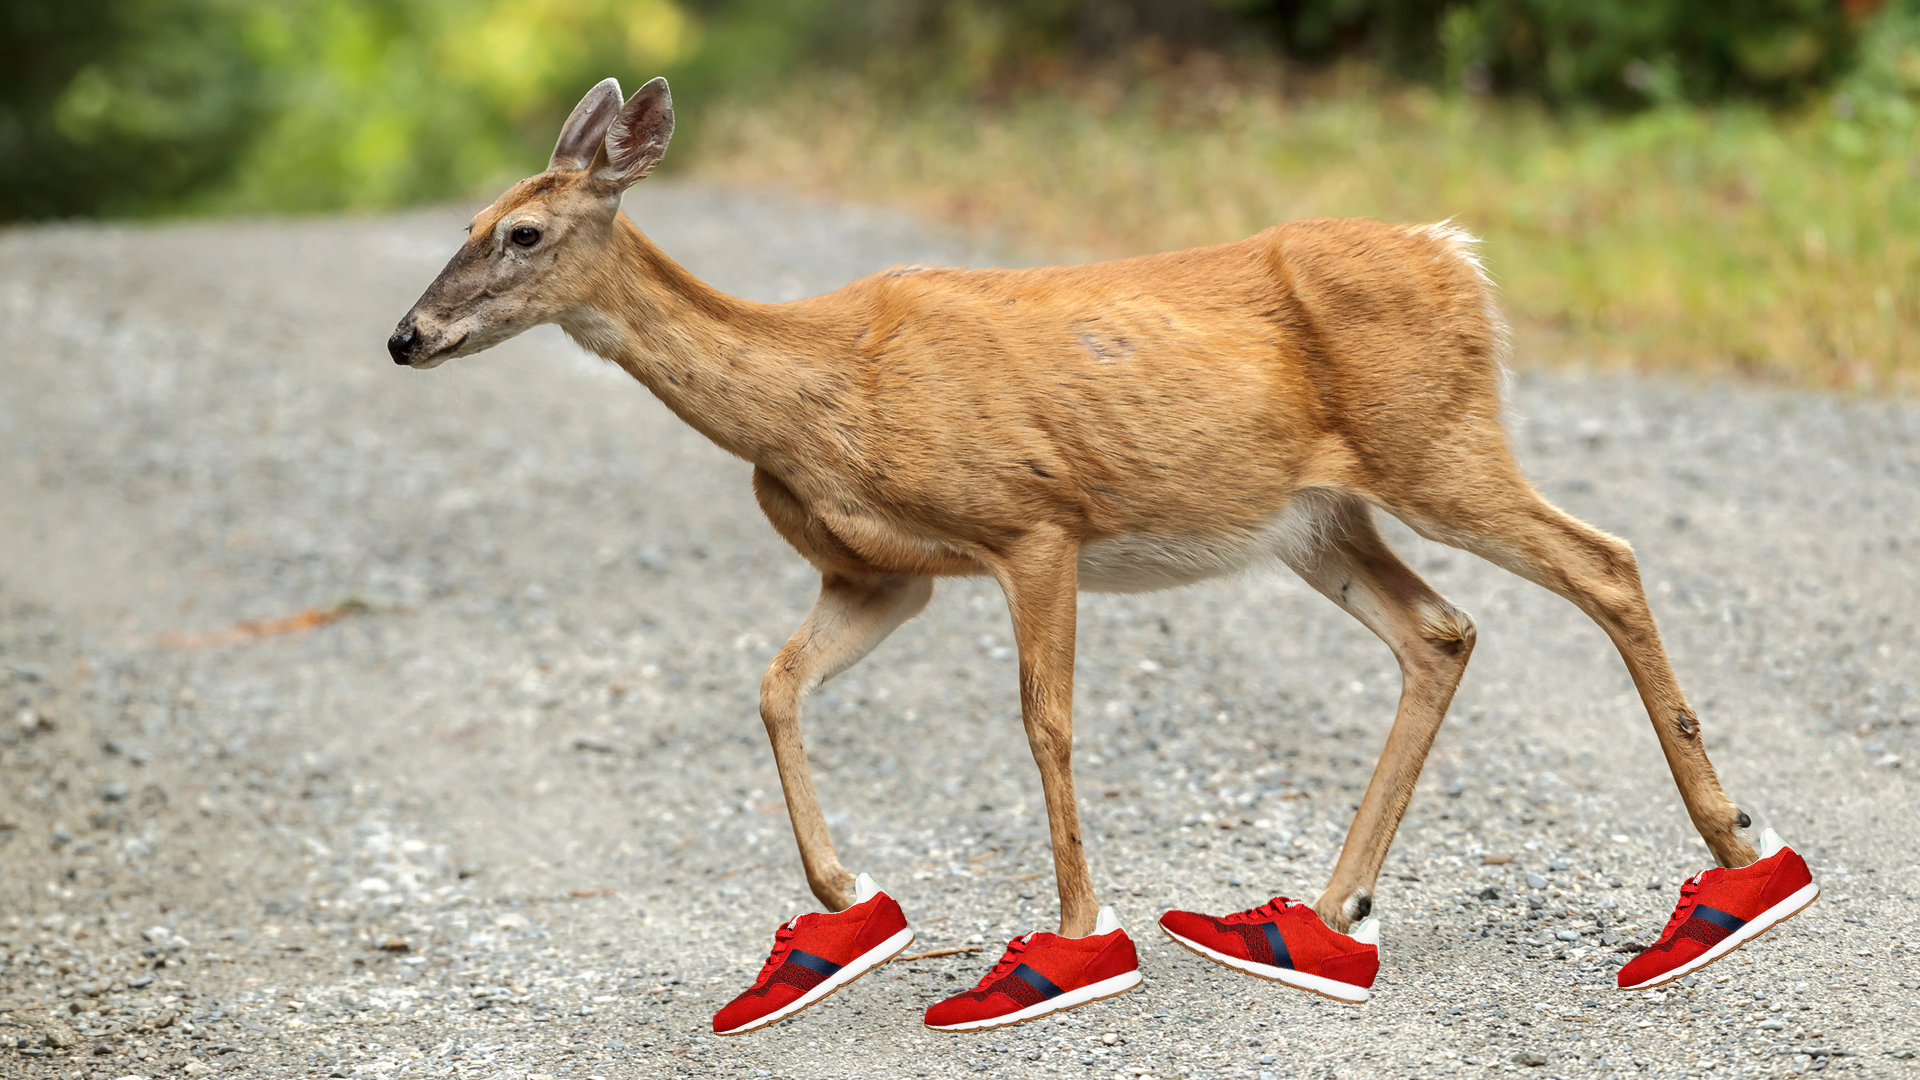 A deer wearing running shoes